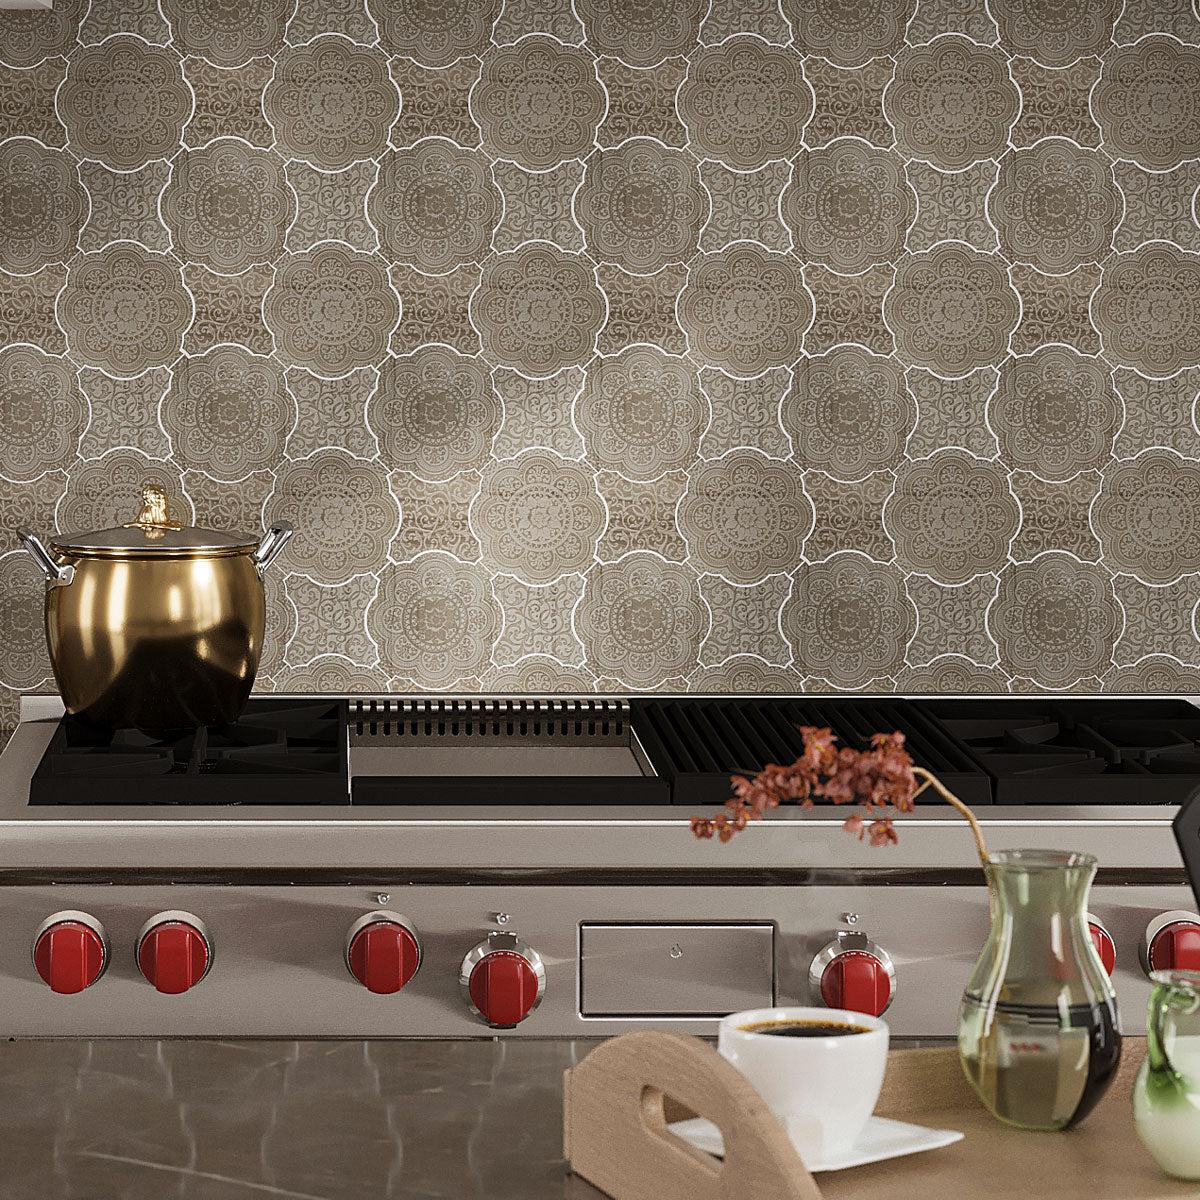 Floral Grey & Star Etched Stone Mosaic Backsplash Tile